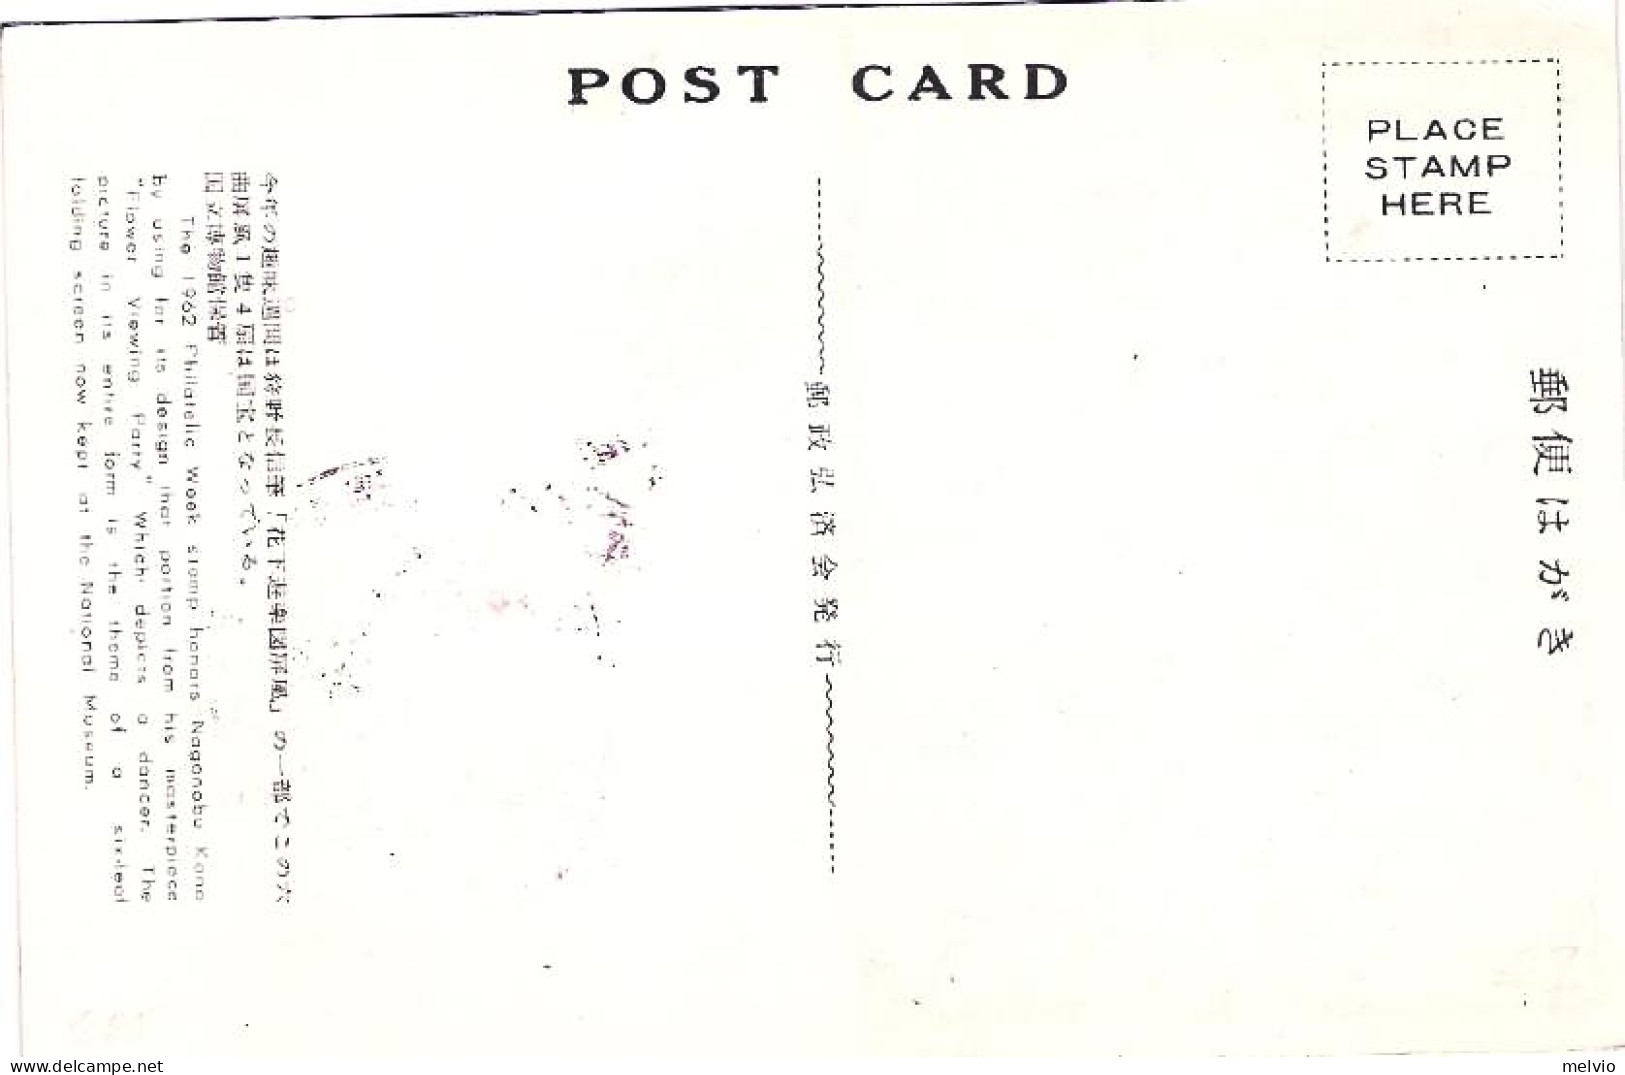 1959-Giappone Japan S.1v."Settimana Filatelica"su Fdc Illustrata - FDC